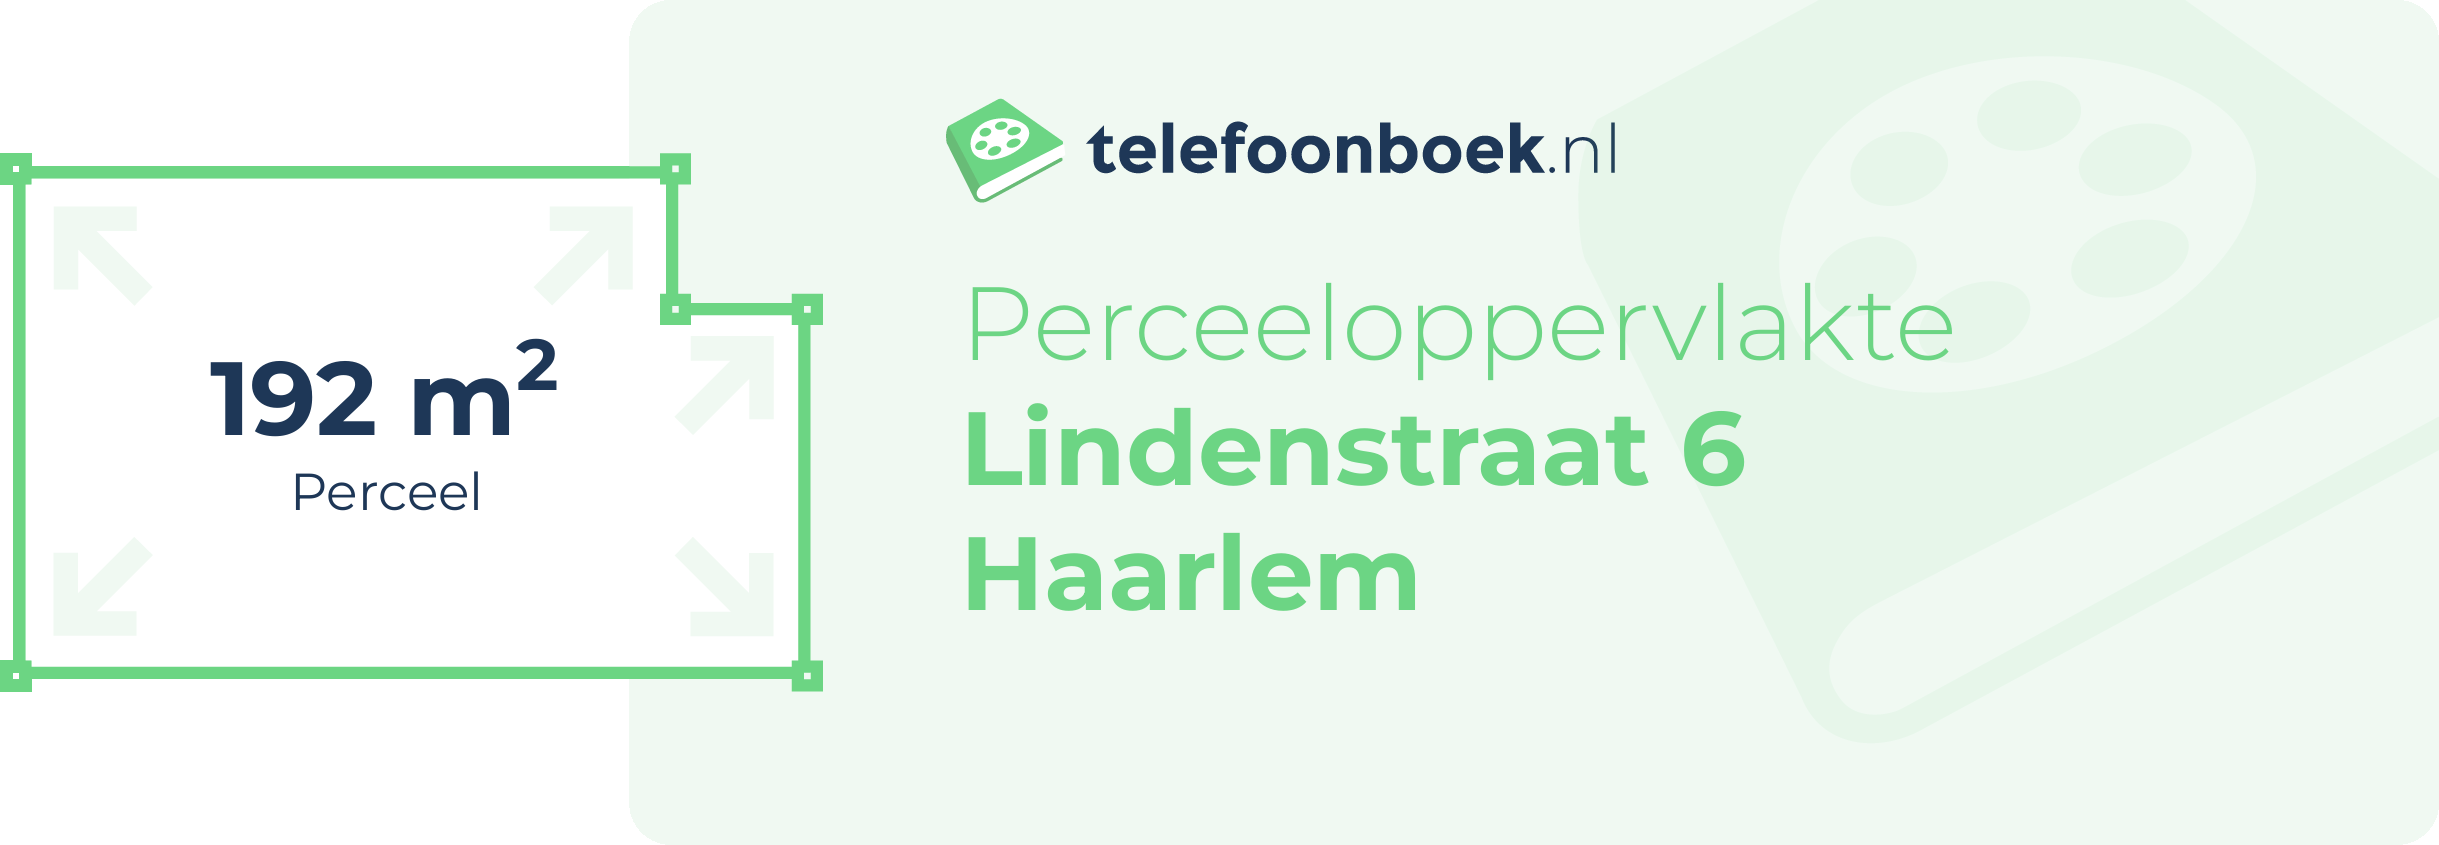 Perceeloppervlakte Lindenstraat 6 Haarlem